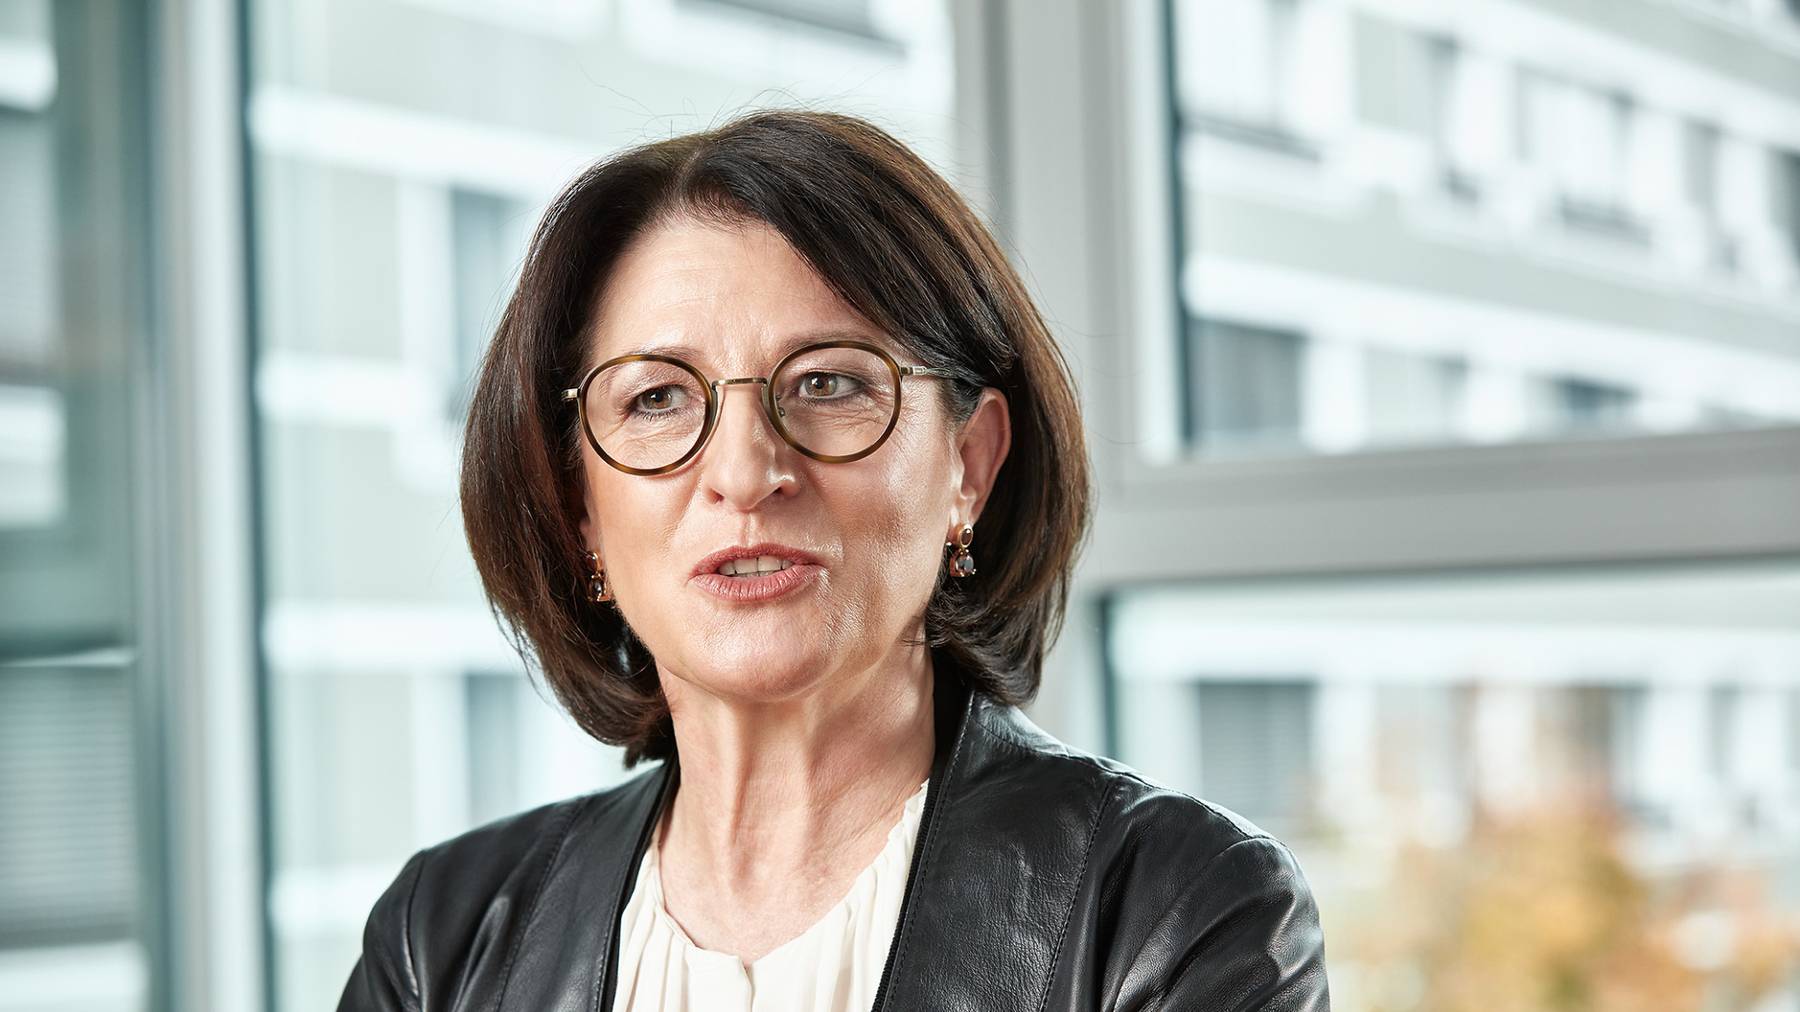 Christina Troglia, Generalsekretärin und stv. Vorsitzende der Geschäftsleitung der Aargauischen Gebäudeversicherung, geht in den vorzeitigen Ruhestand.